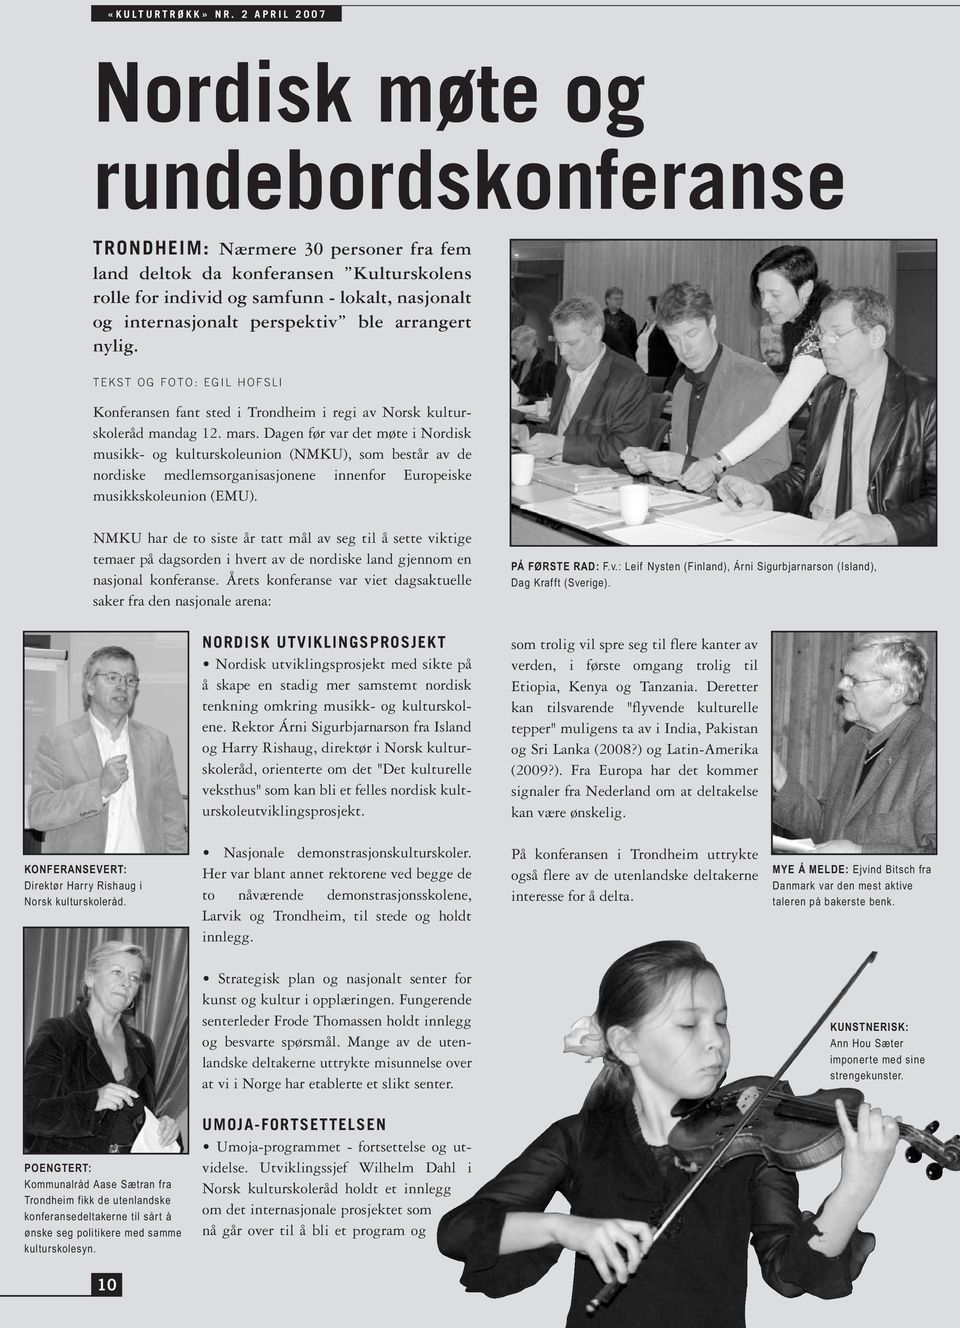 Dagen før var det møte i Nordisk musikk- og kulturskoleunion (NMKU), som består av de nordiske medlemsorganisasjonene innenfor Europeiske musikkskoleunion (EMU).